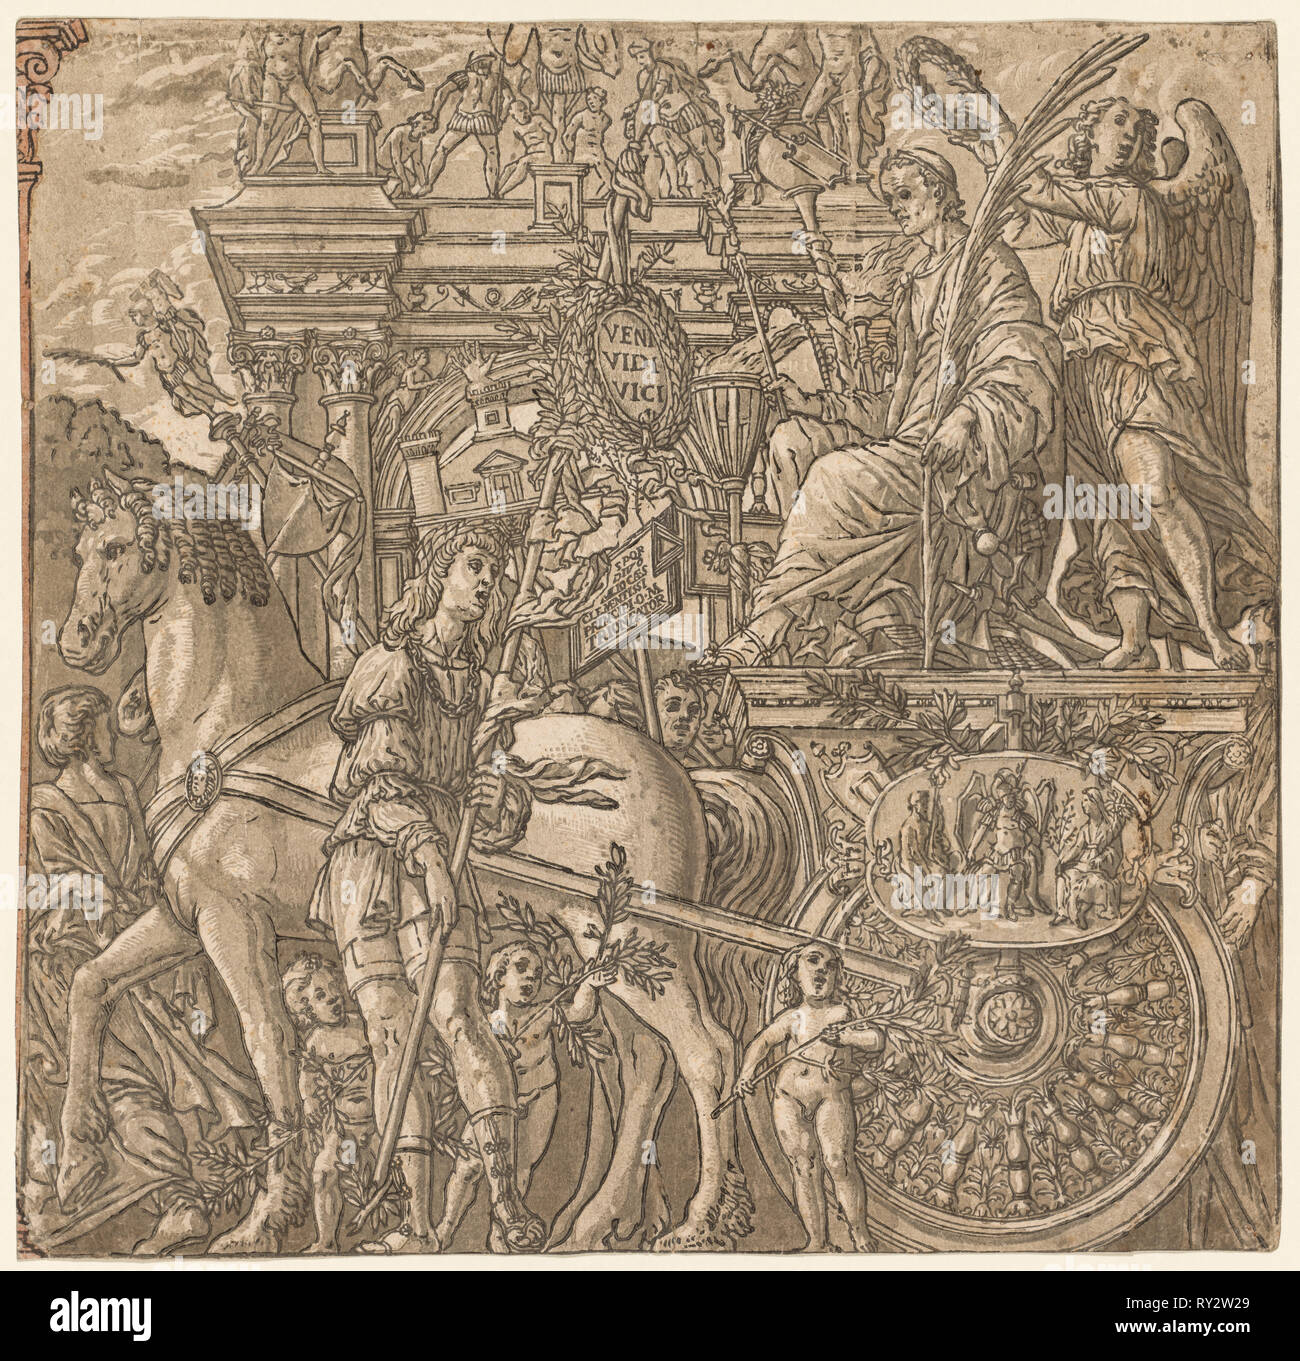 Le Triomphe de Jules César : César triomphant, 1593-99. Andrea Andreani (italien, à propos de 1558-1610), après l'Italien, Andrea Mantegna (1431-1506). Gravure sur bois clair-obscur Banque D'Images